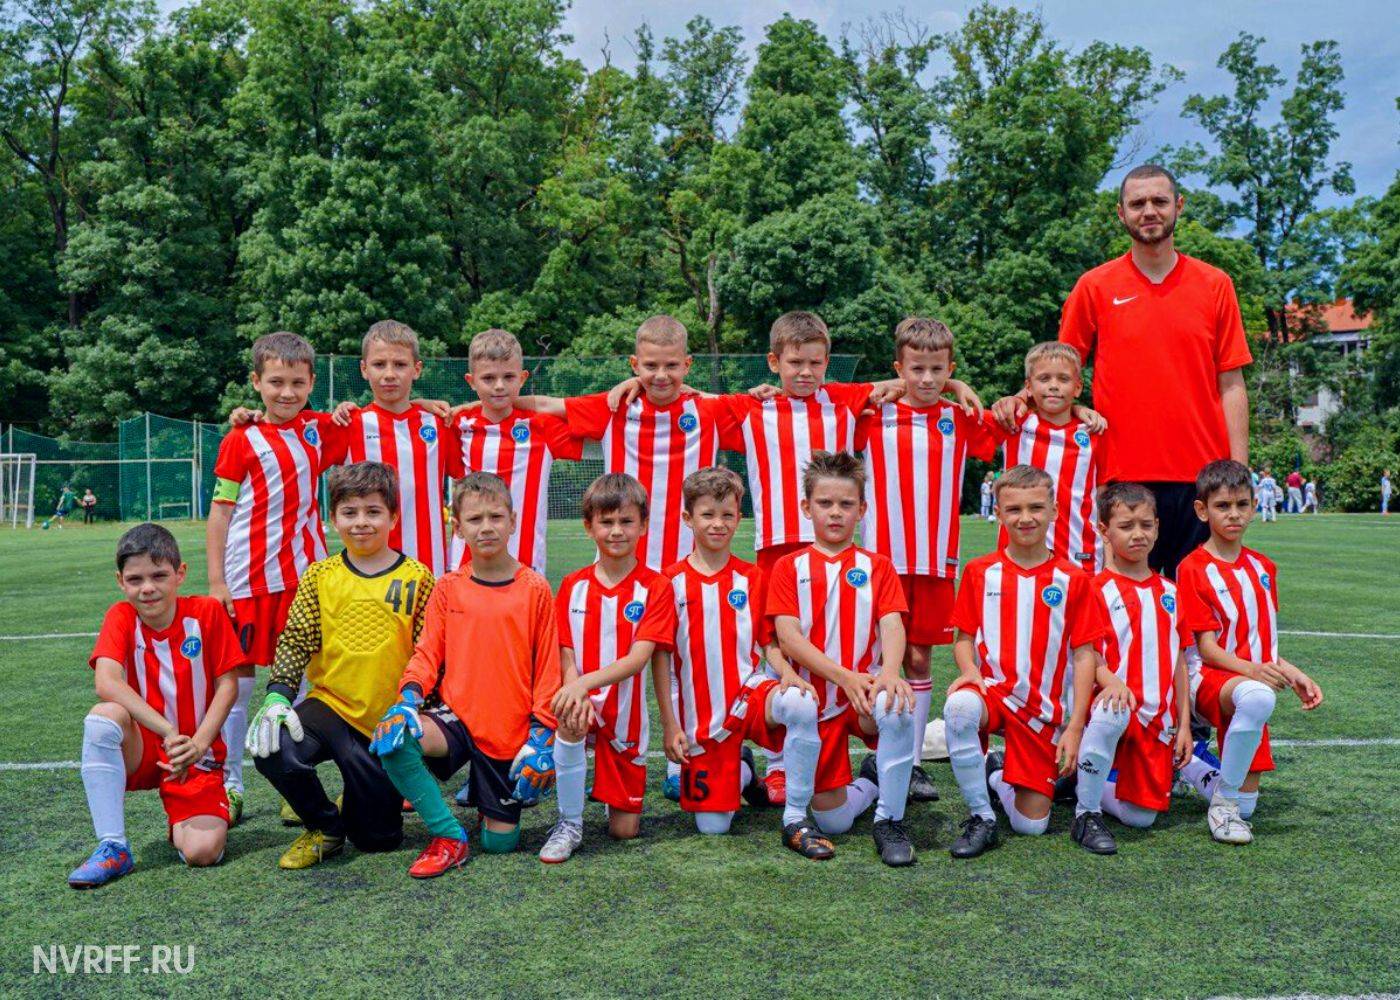 Первенство Новороссийска по футболу среди детских команд в возрастной категории 2014 г.р.